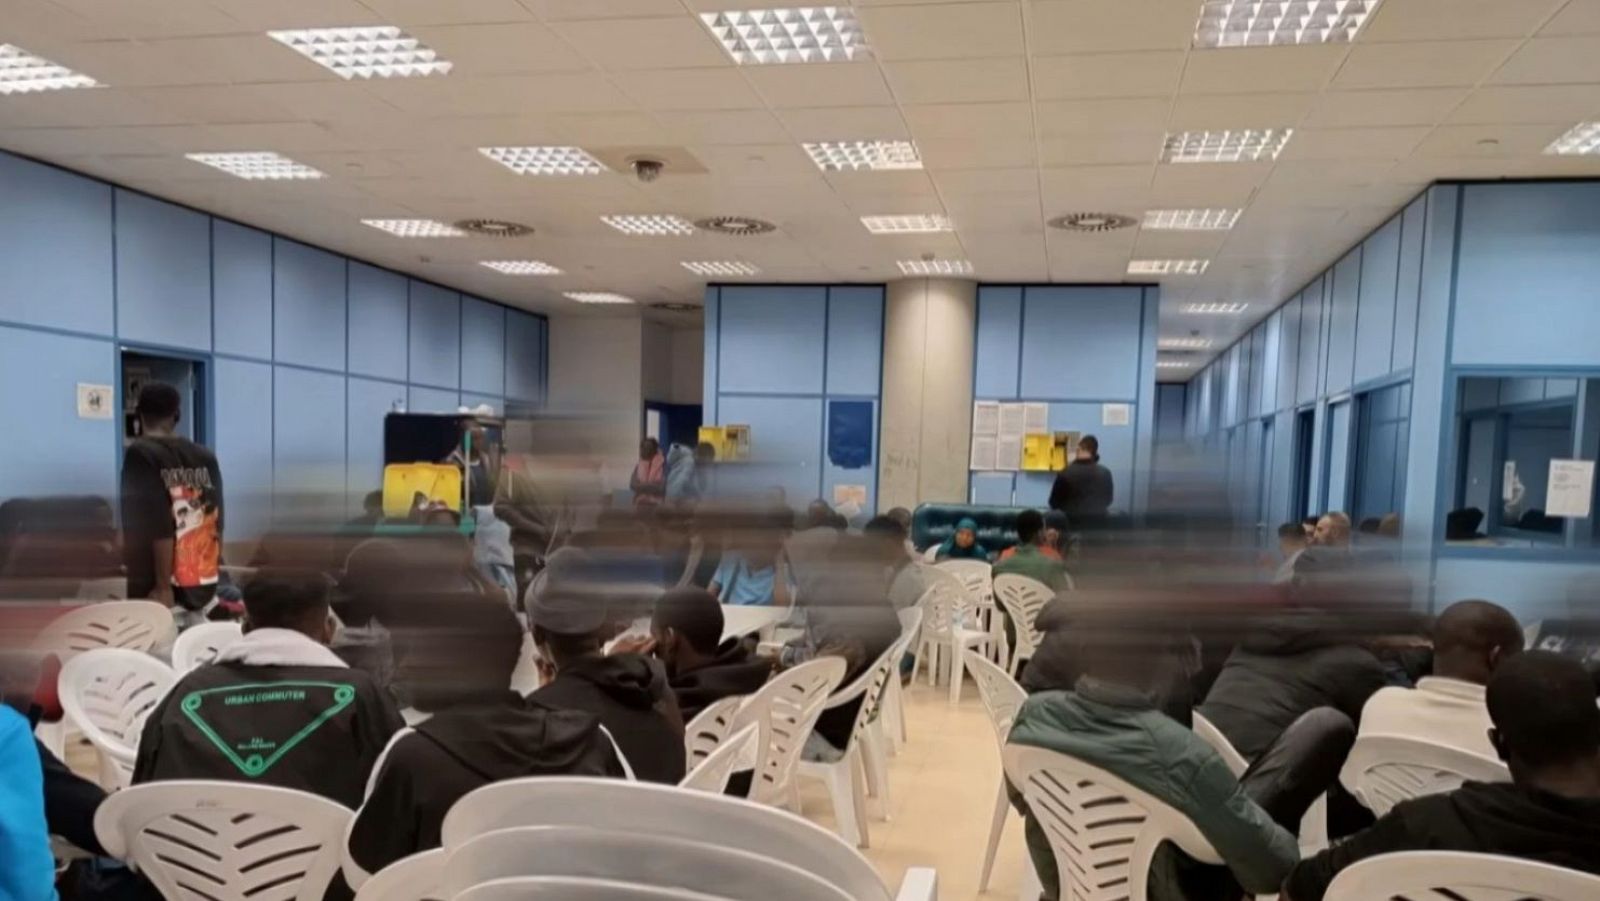 Cruz Roja se retira del aeropuerto de Barajas ante la saturación en las salas de asilo